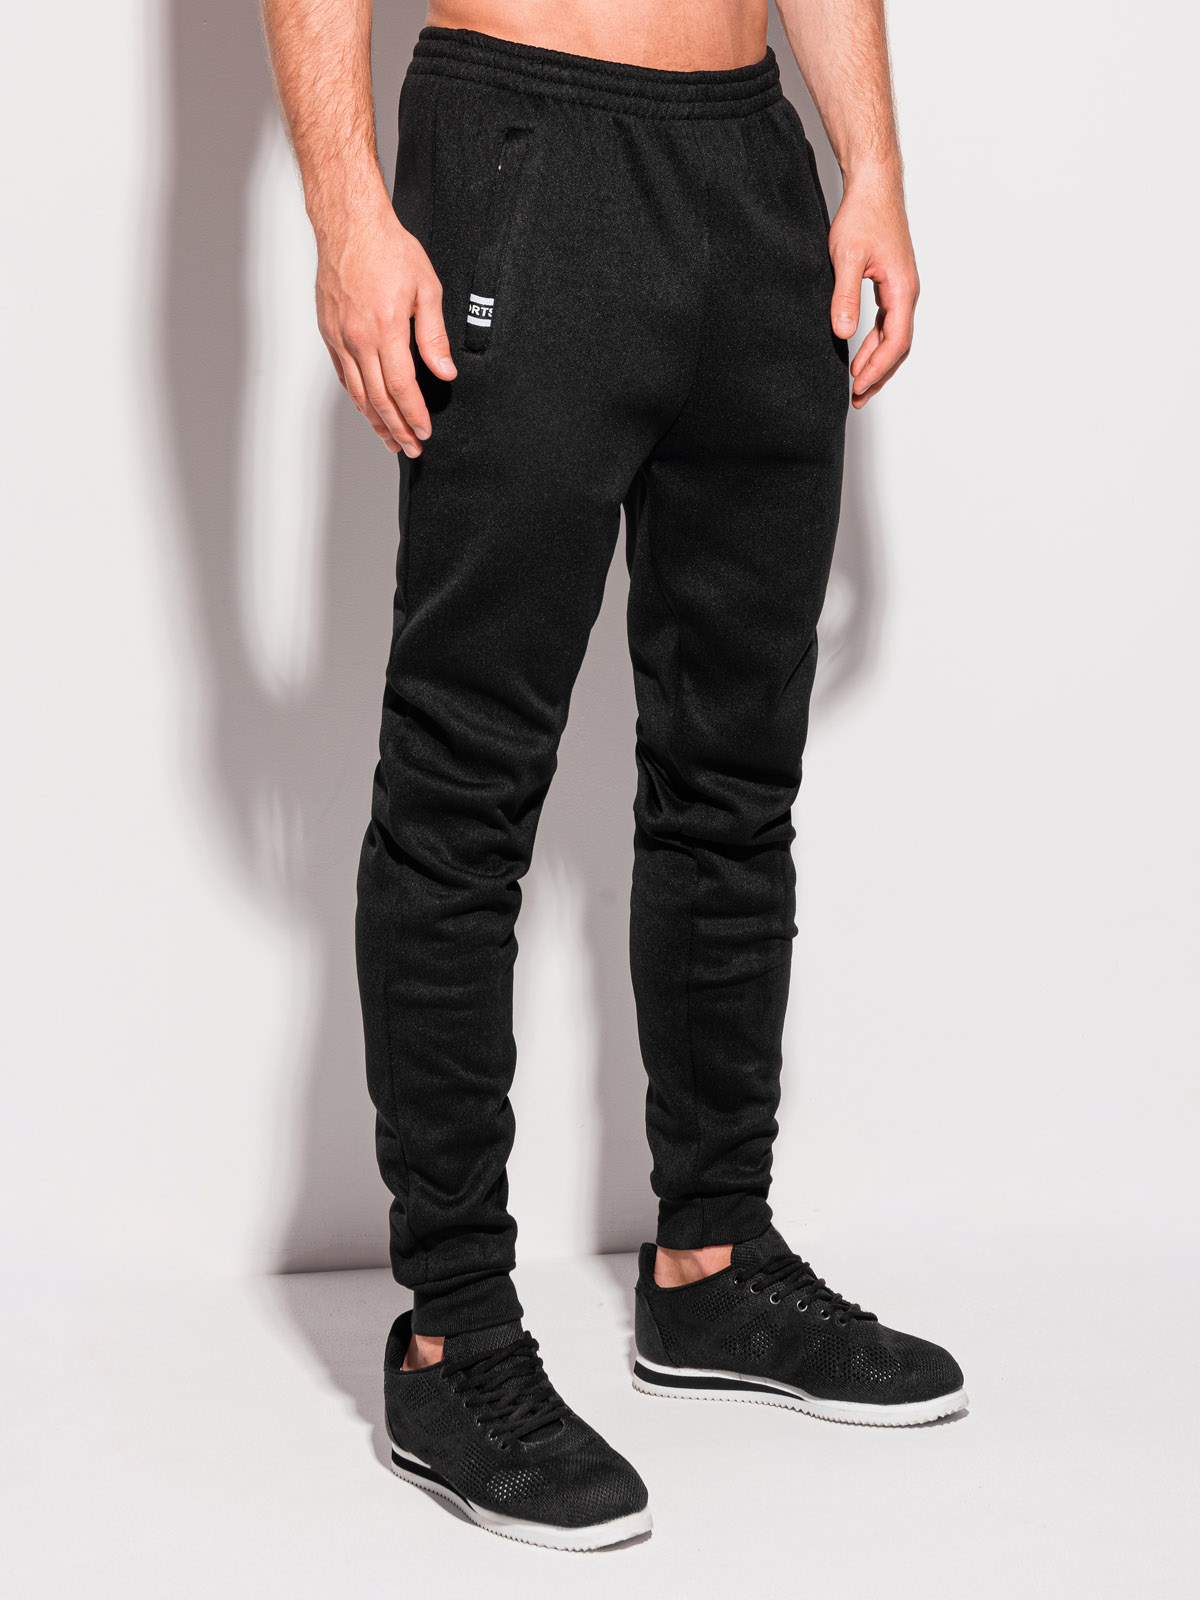 Men's sweatpants P1285 - black | MODONE wholesale - Clothing For Men